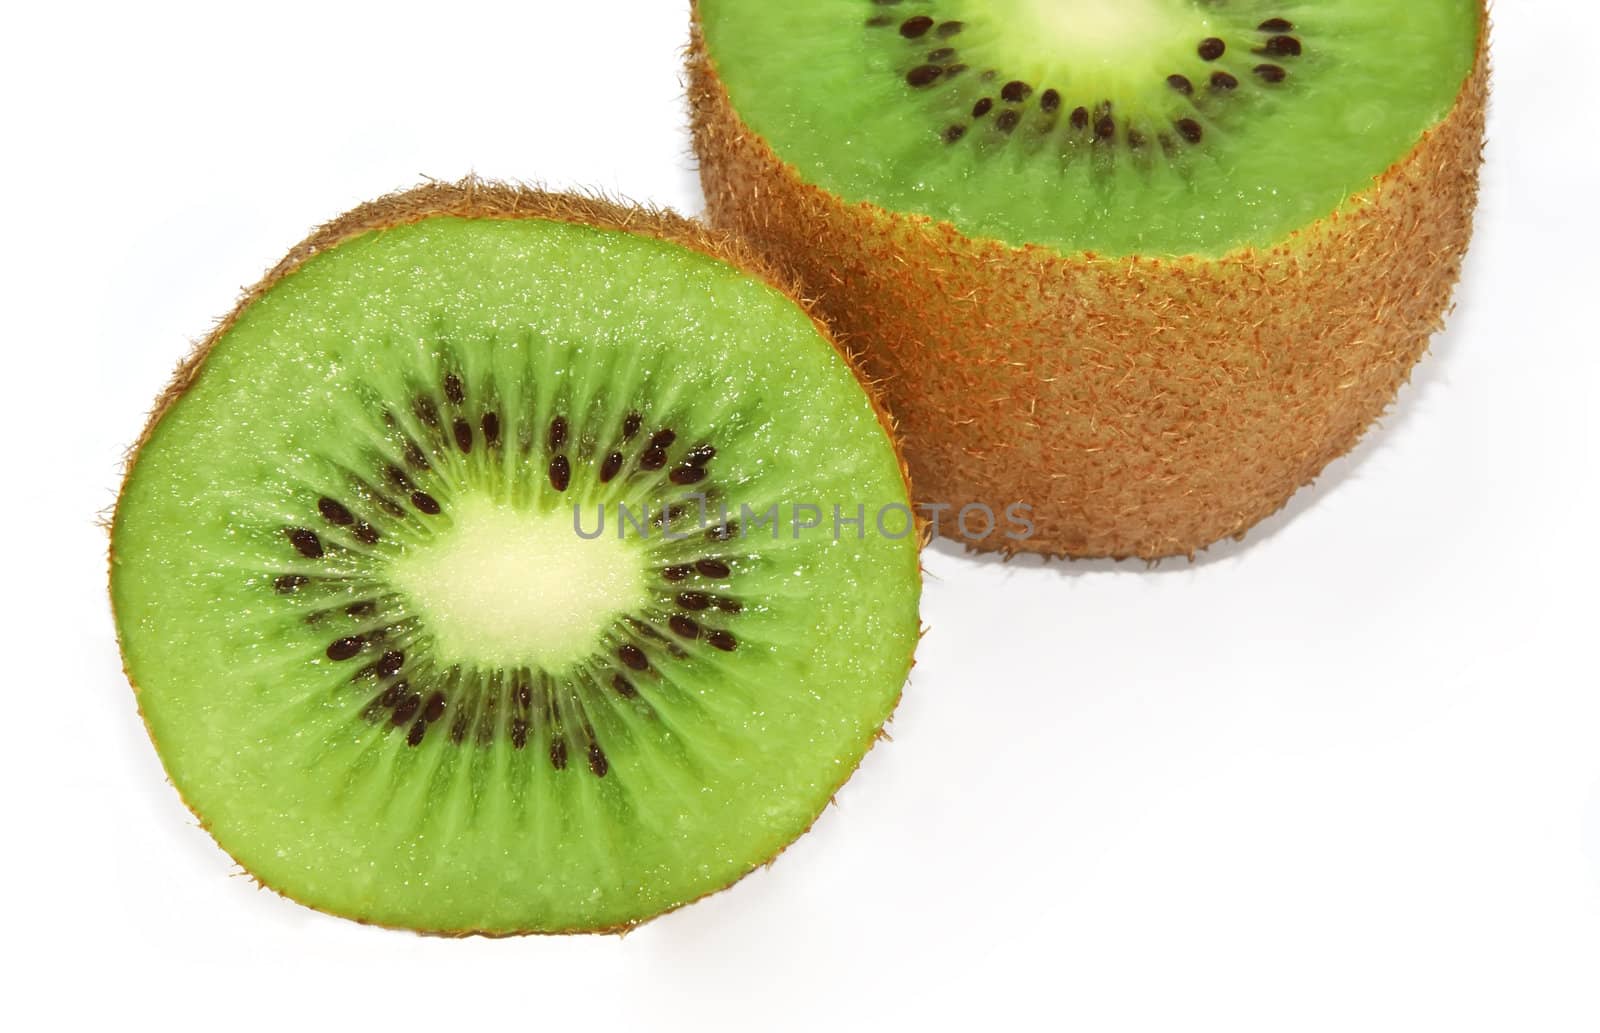 kiwi fruit by whitechild